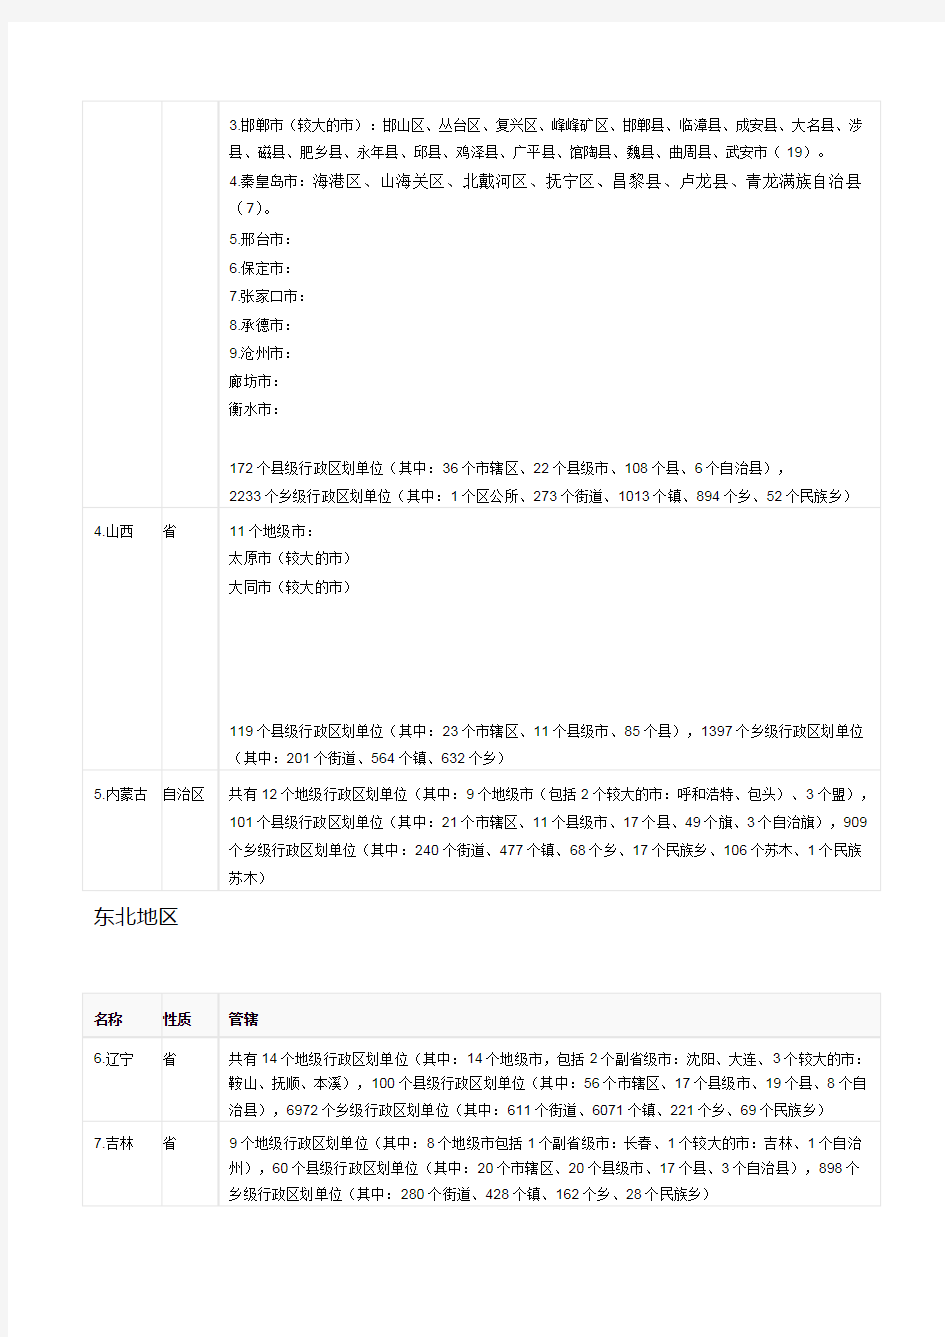 中国行政区划汇总表